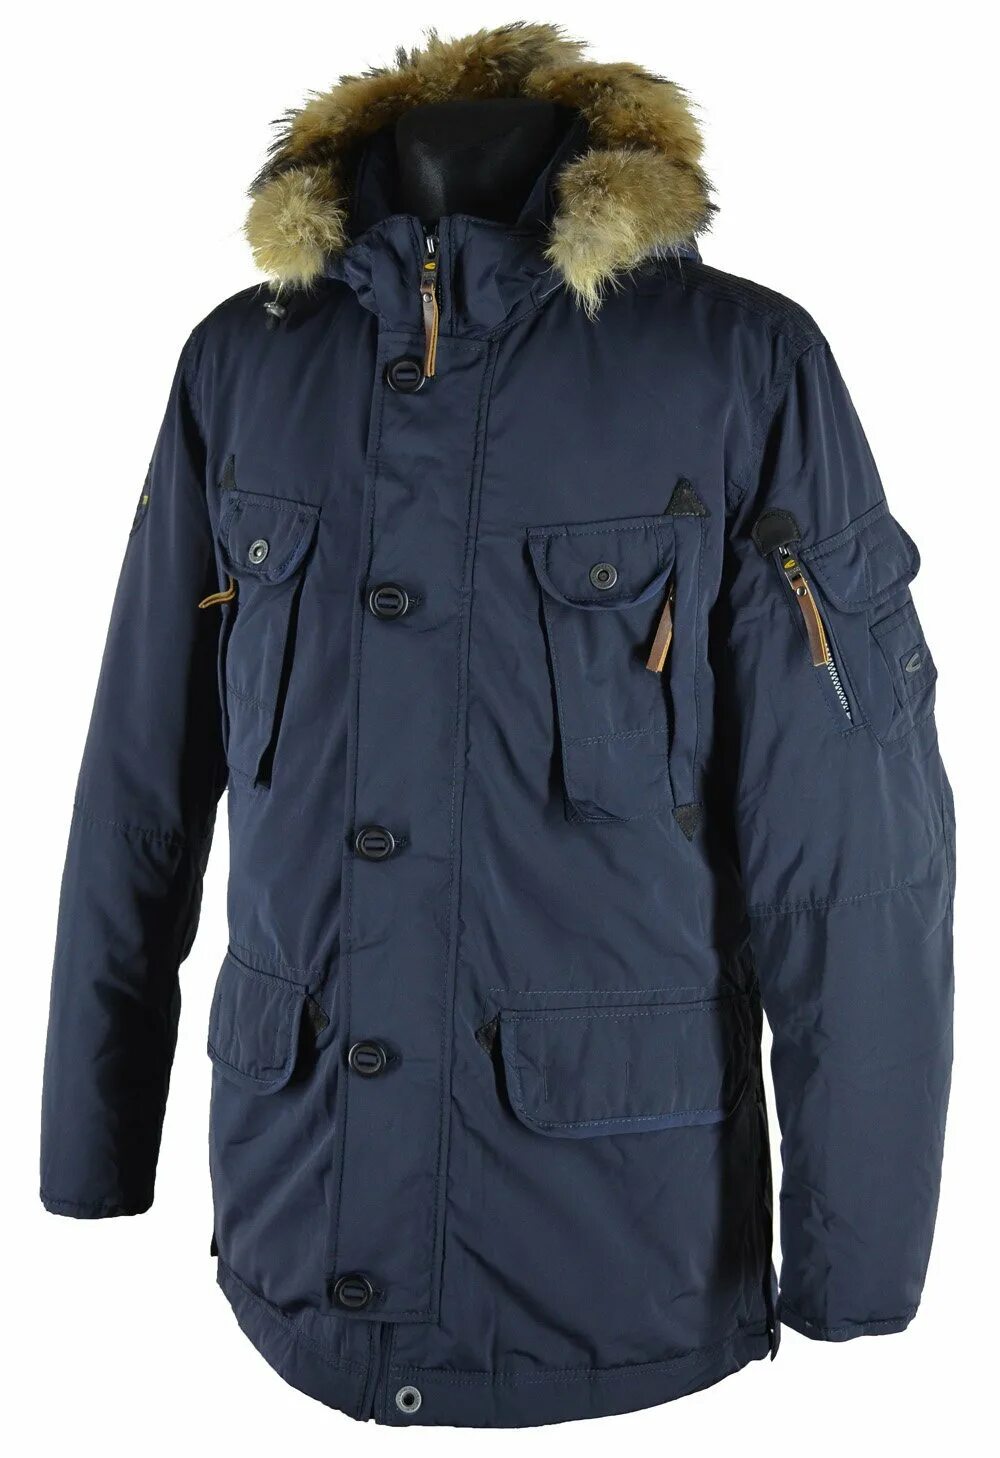 Skandi куртки 2061. Шведские куртки мужские зимние. Куртки мужские зимние финские. Куртки мужские зимние финские шведские Канадские.